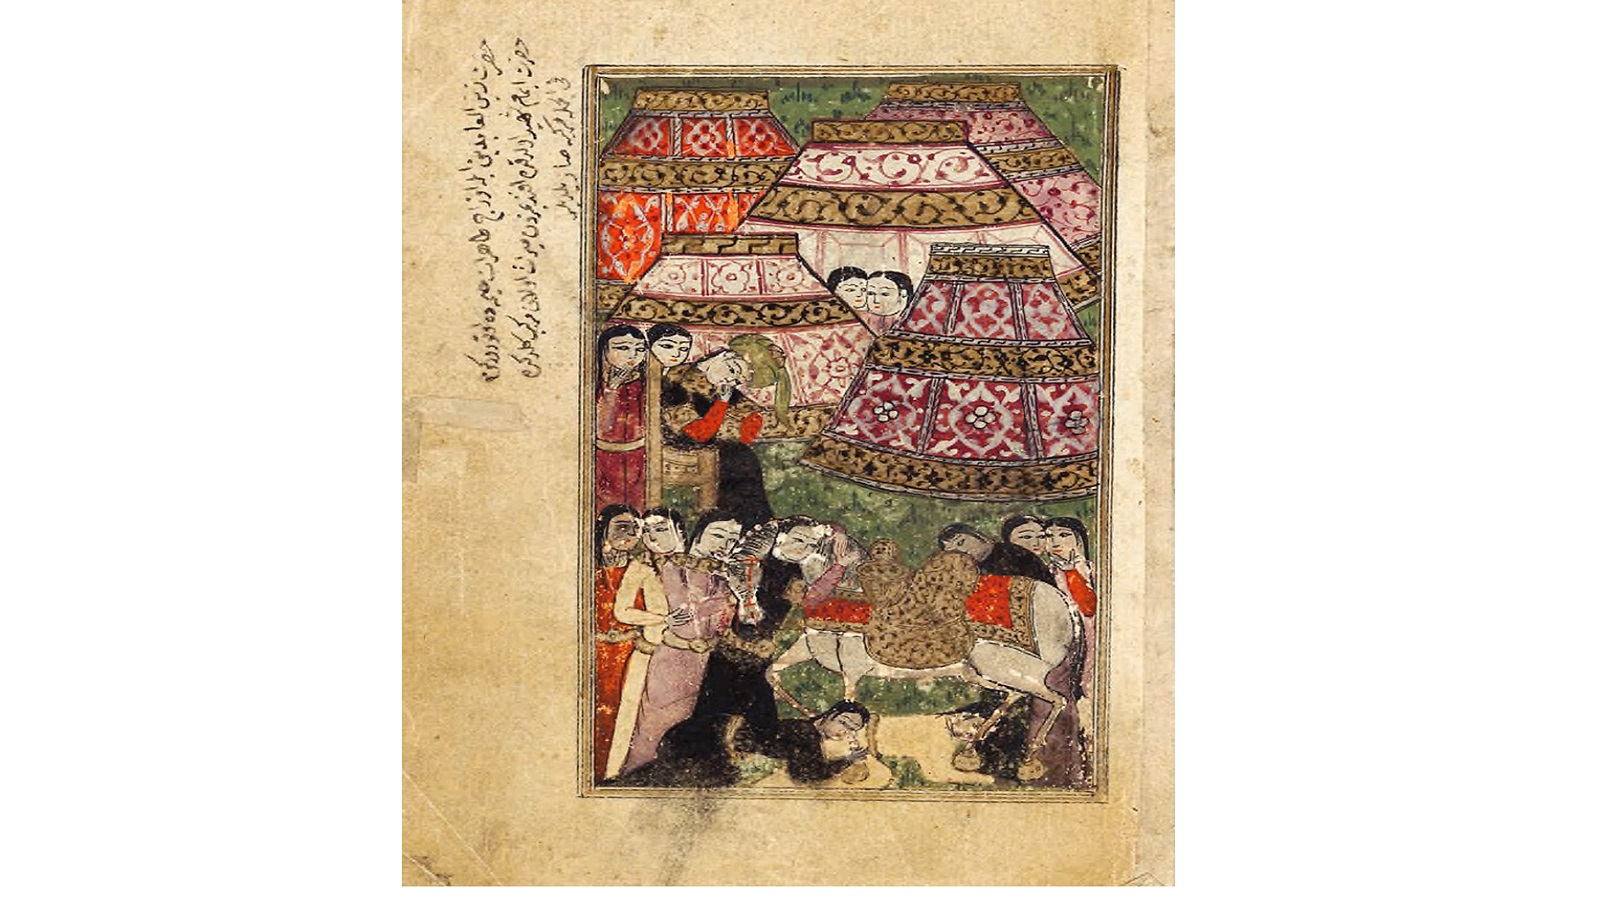 - أتباع أهل البيت مع الفرس الذي ركبه الحسين يوم عاشوراء، حديقة السعداء، 1575، محفوظات متحف جامعة هارفرد.